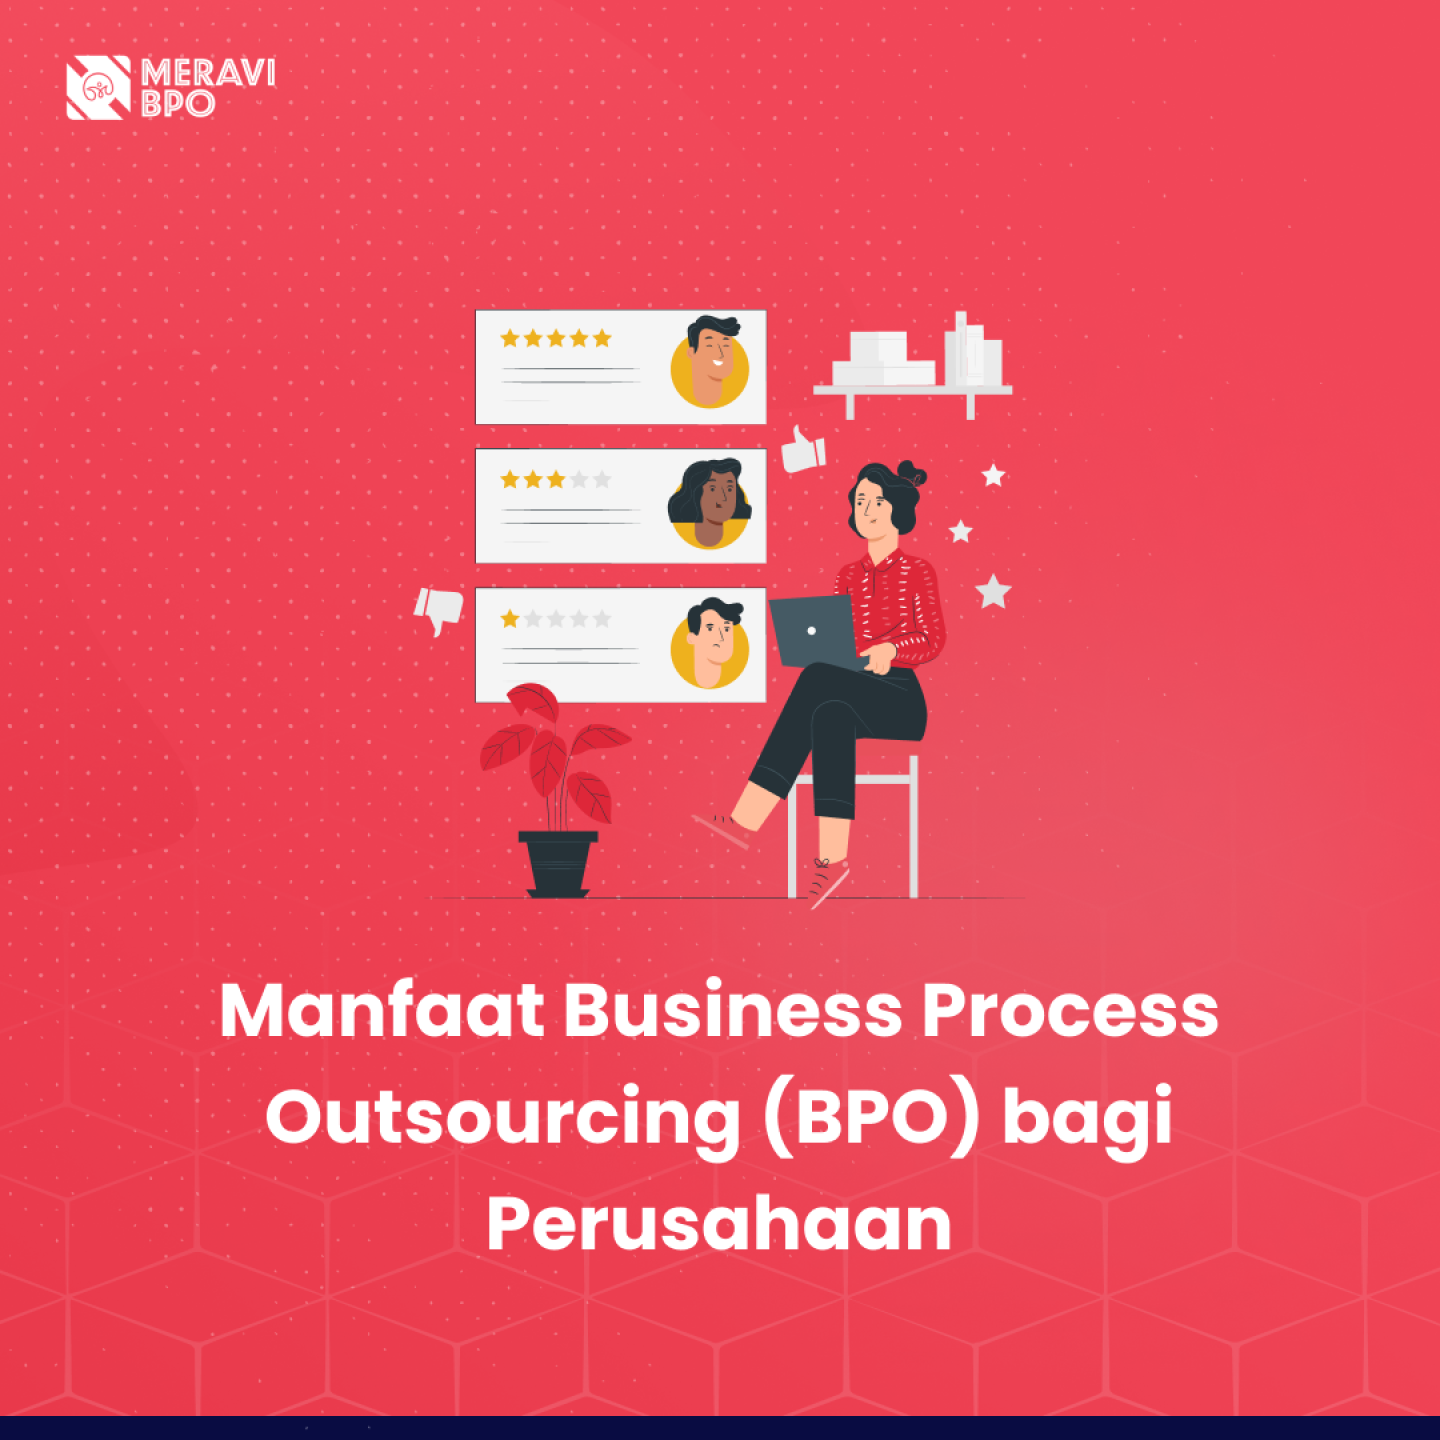 Manfaat Business Process Outsourcing (BPO) bagi Perusahaan